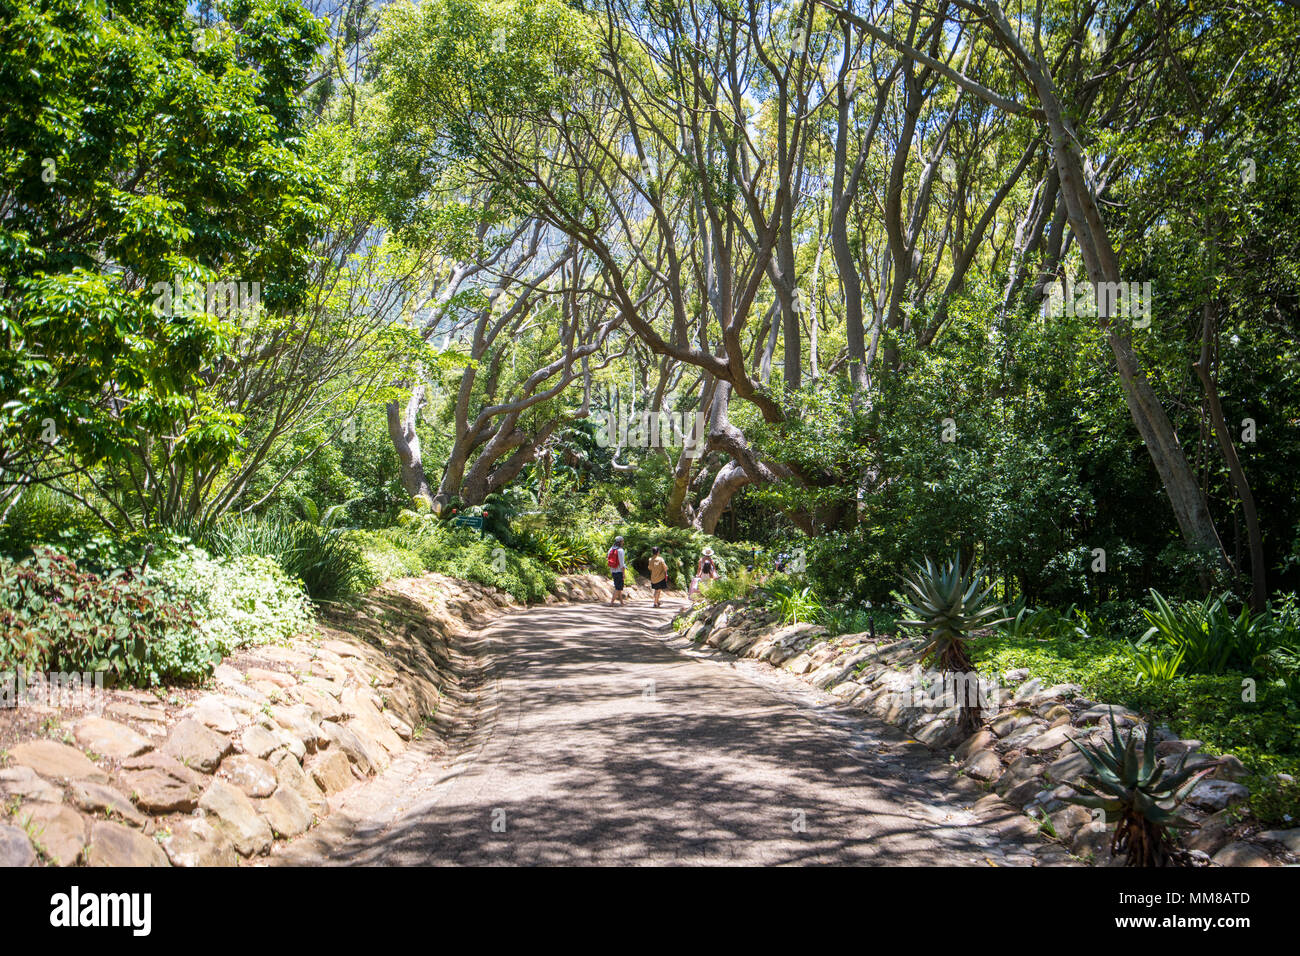 Eine kleine Gruppe von Menschen zu Fuß entlang einem Pfad am Botanischen Garten Kirstenbosch in Kapstadt, Südafrika Stockfoto